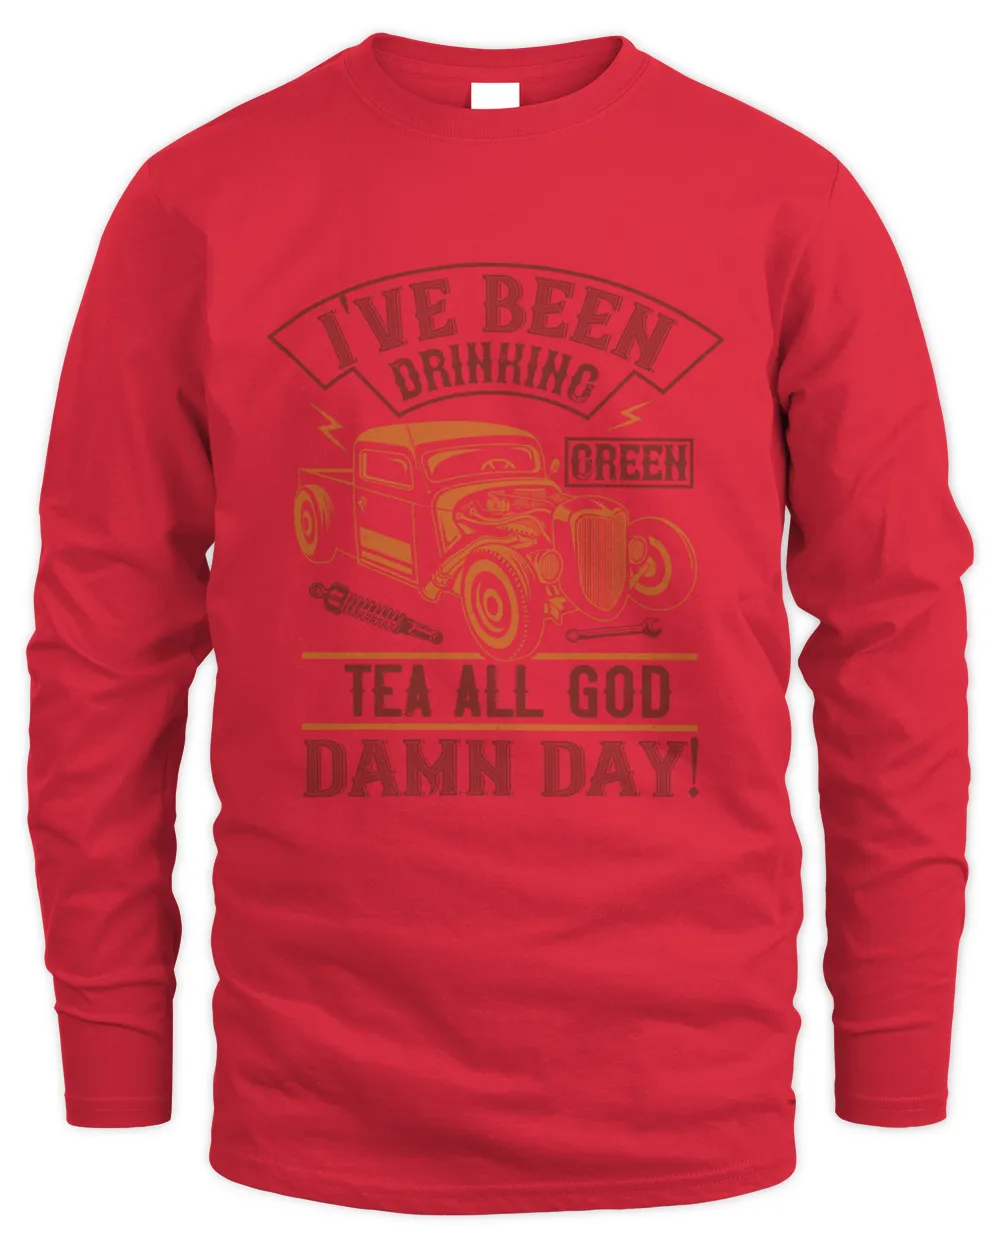 I've been drinking green tea all god damn day!-01